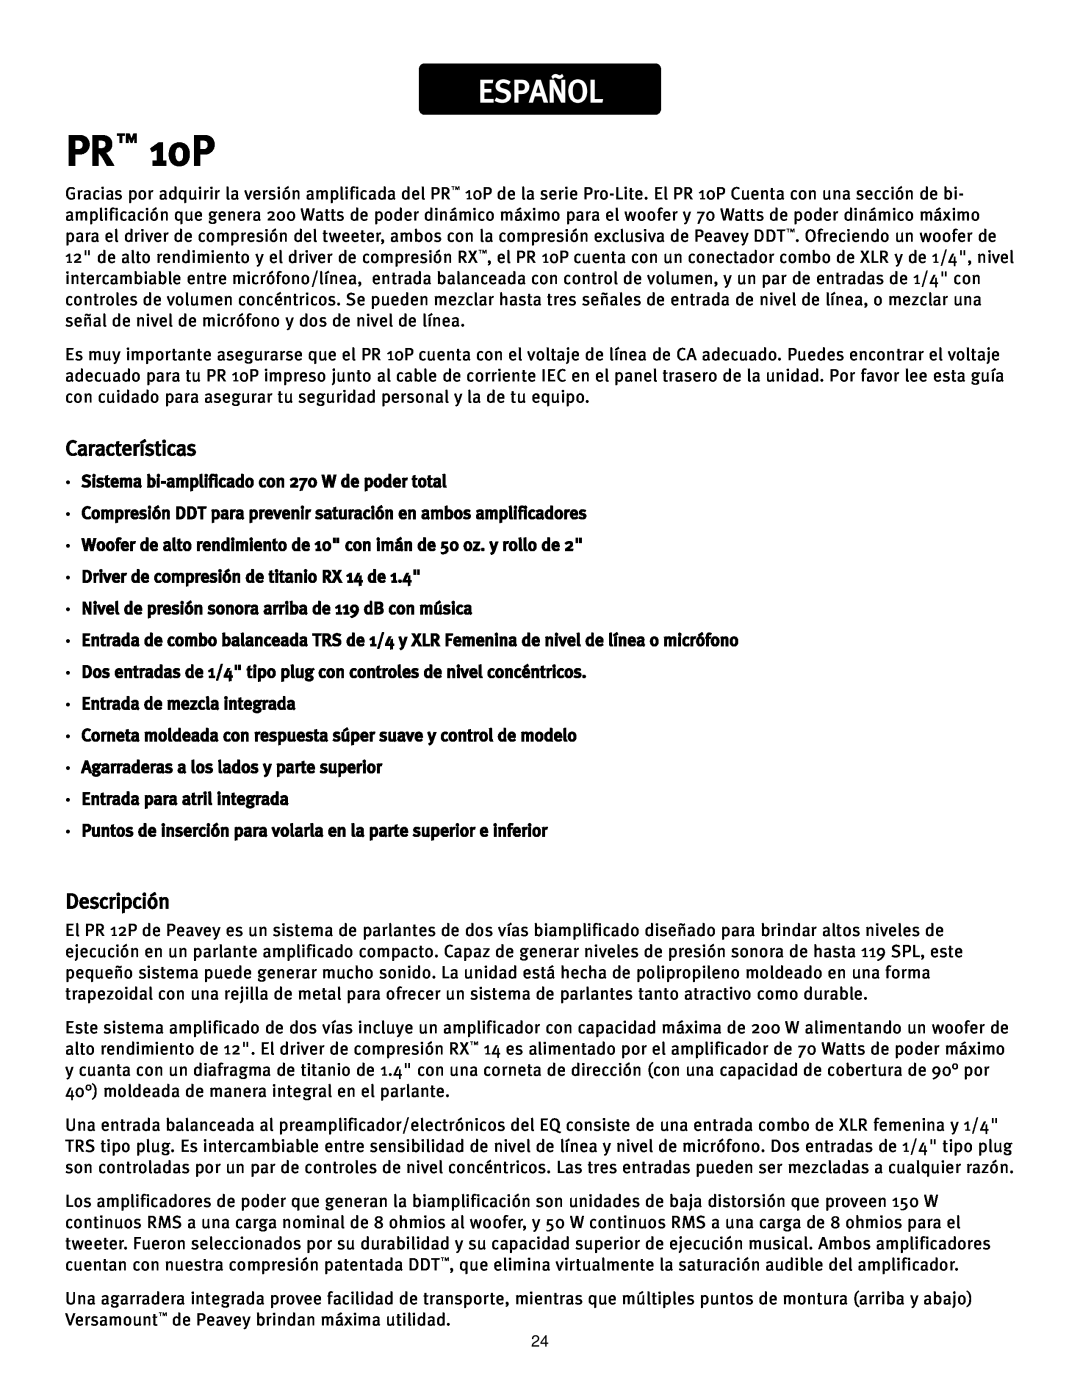 Peavey manual Español, Características, Descripción, PR 10P 